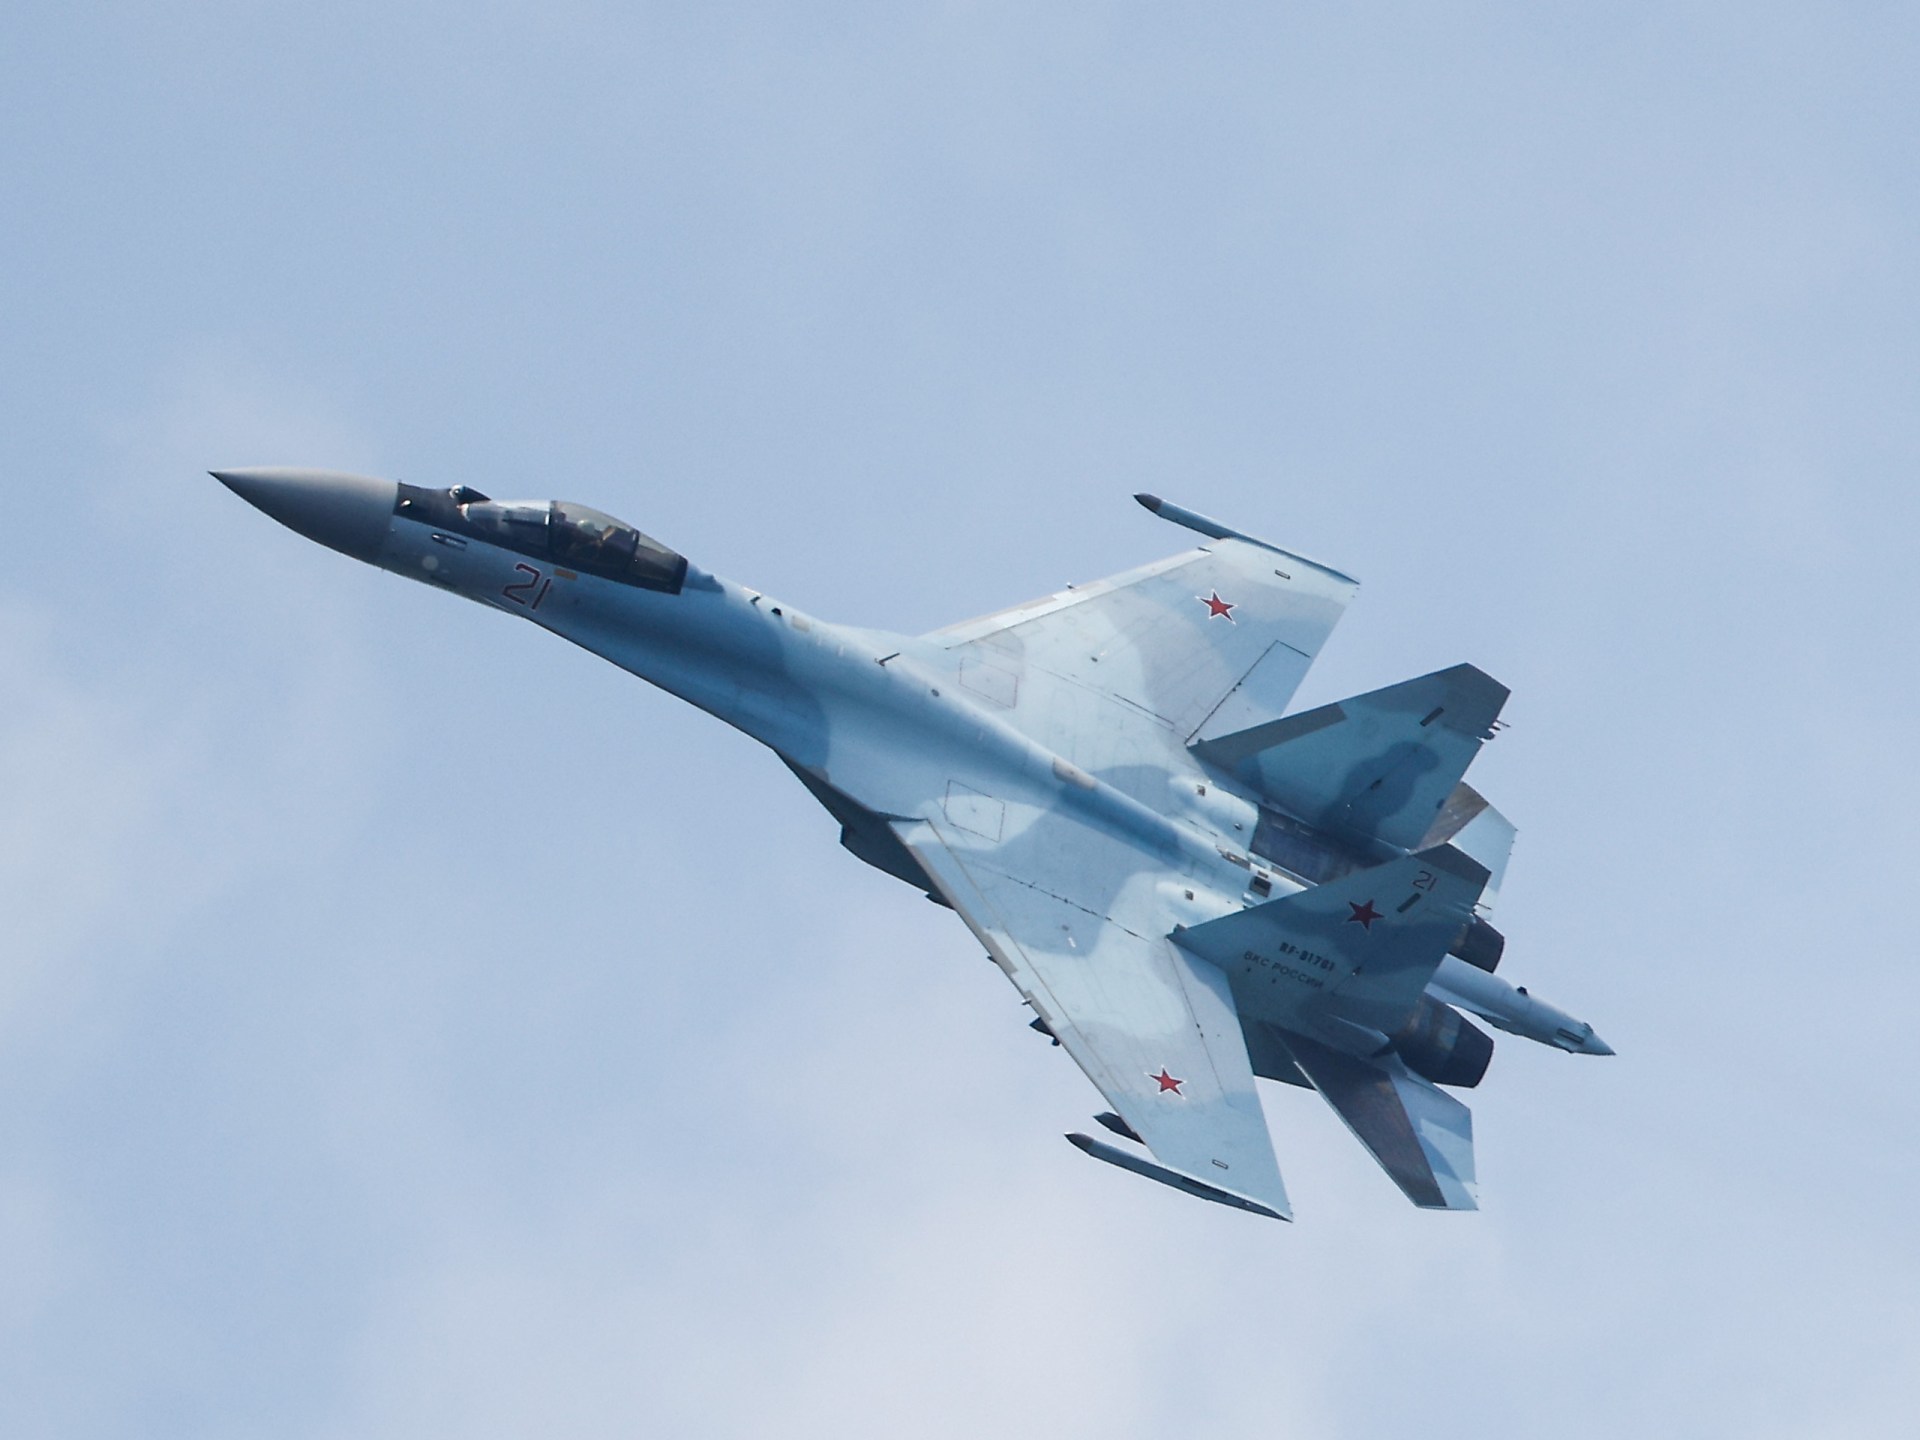 روسيا تقول ان طائرة هرعت بينما تحلق قاذفات امريكية من طراز B-52 فوق بحر البلطيق |  أخبار الصراع